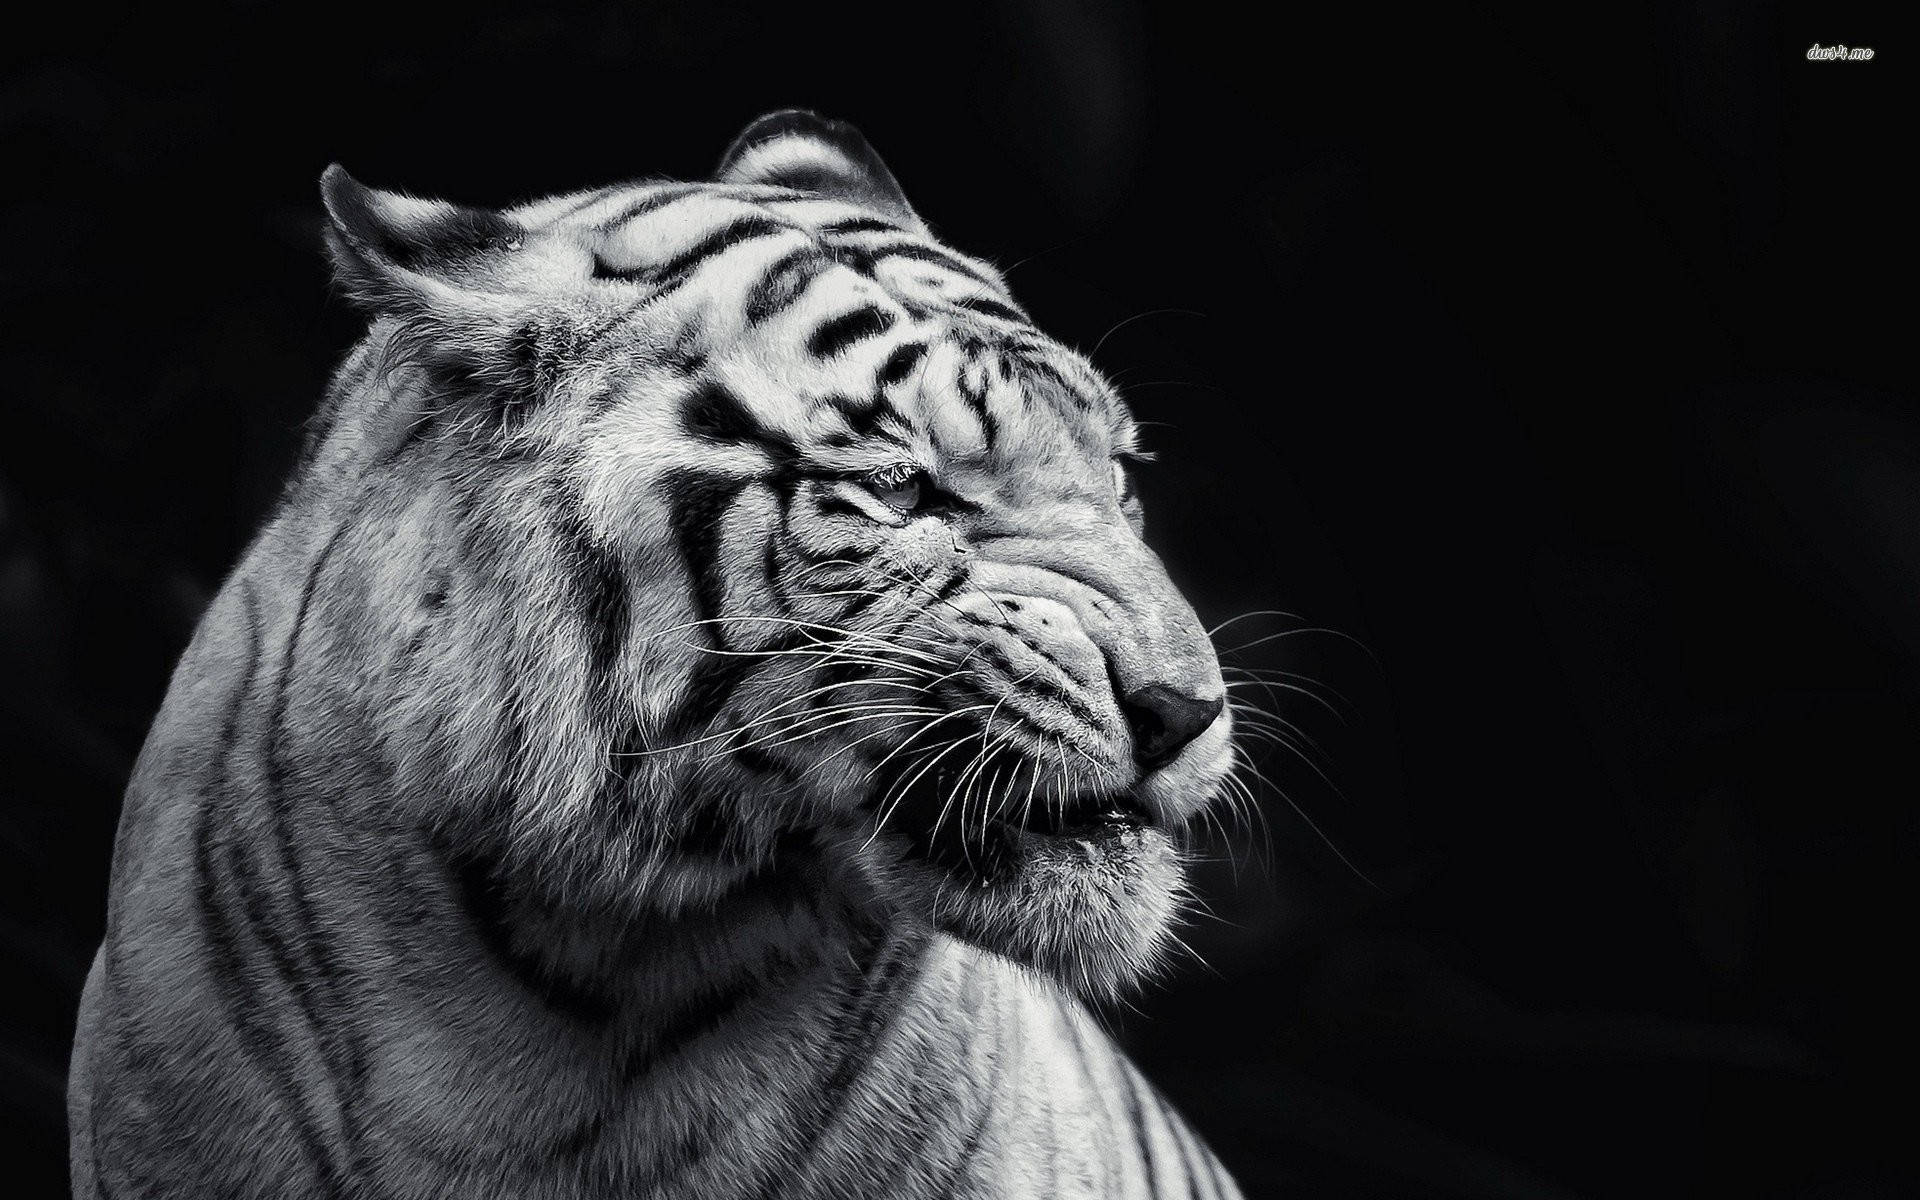 Fotografiaem Preto E Branco De Tigre. Papel de Parede